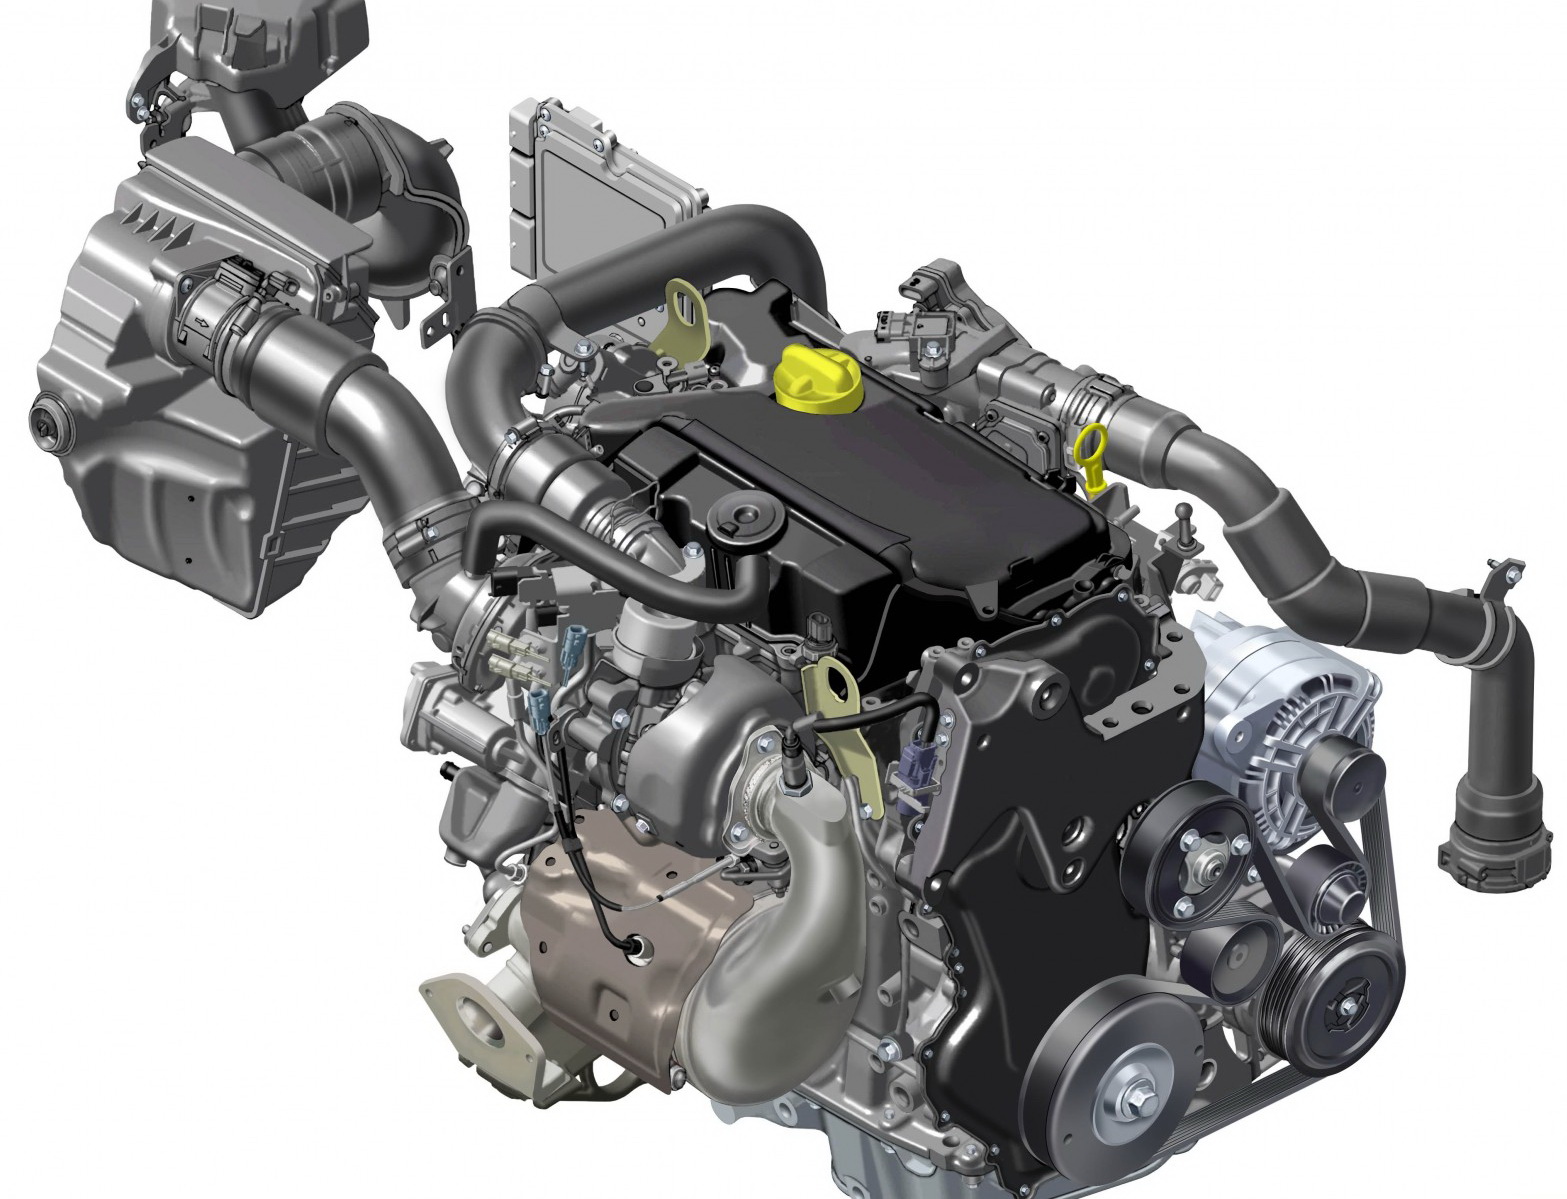 Двигатели б у рено. Renault r9m 1.6 DCI. Мотор k9k 1.5 DCI. Двигатель Рено DCI 1.5 дизель. R9m 1.6 DCI 130л.с.